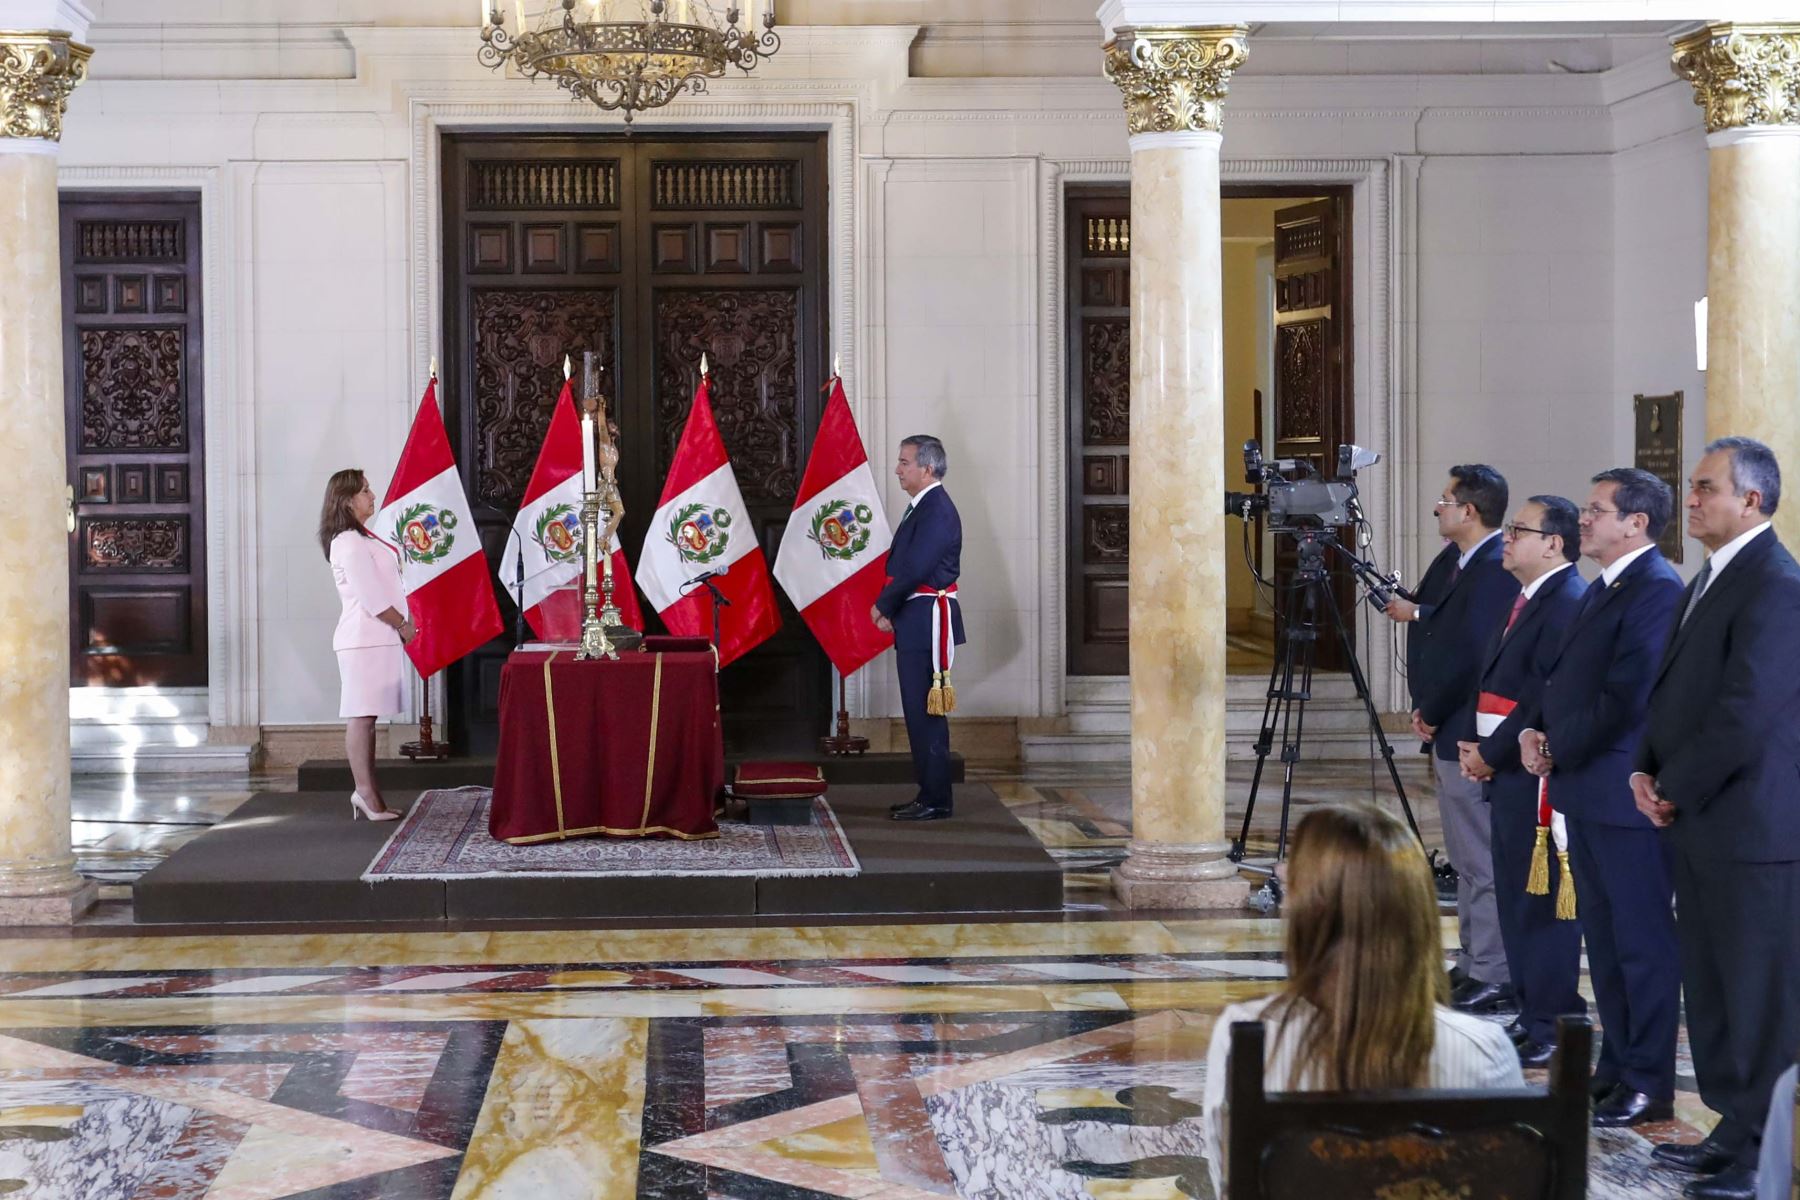 Presidenta de la República, Dina Boluarte, tomó juramento al nuevo titular del Ministerio de la Producción, Raúl Pérez Reyes, en el Palacio de Gobierno.

Foto: ANDINA/Presidencia Perú